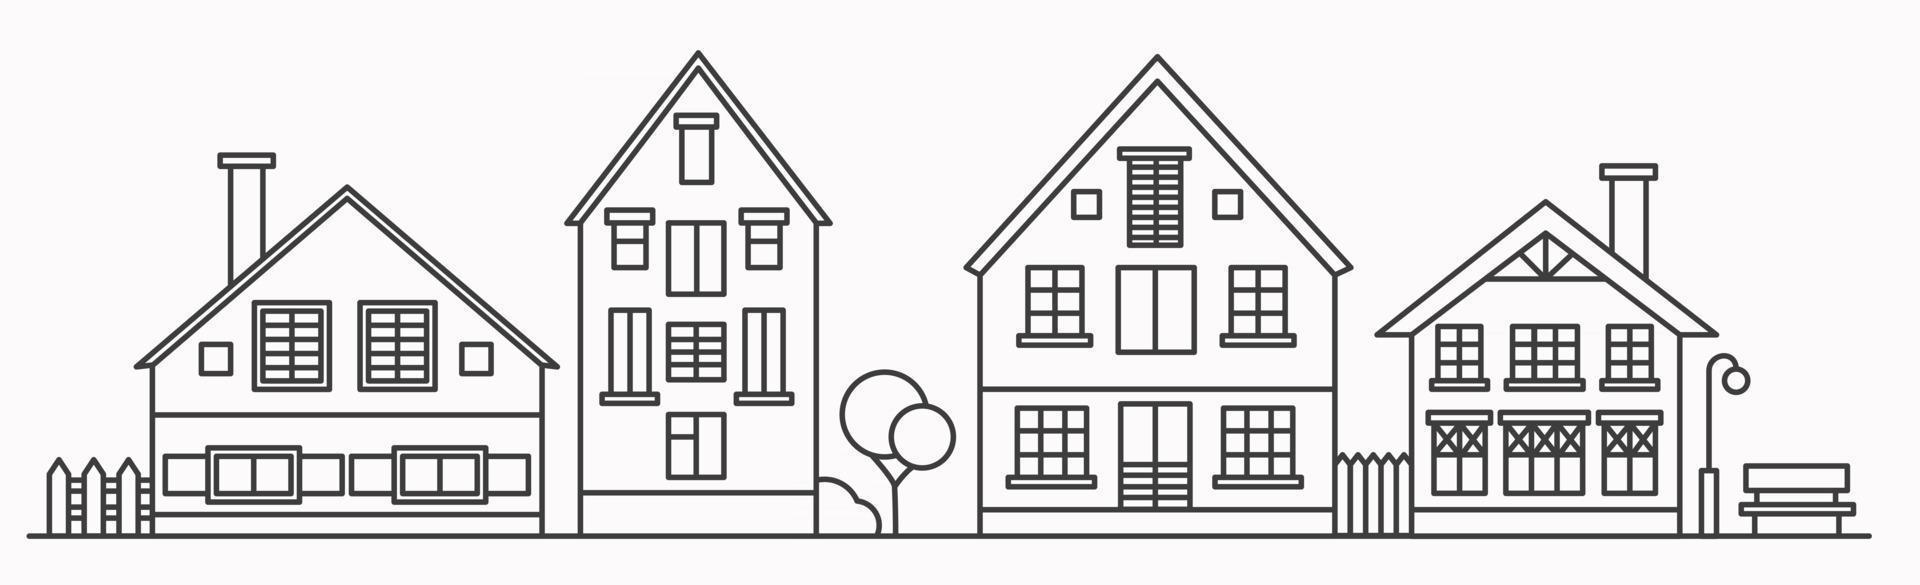 paesaggio urbano lineare con varie case a schiera. illustrazione di contorno. vettore